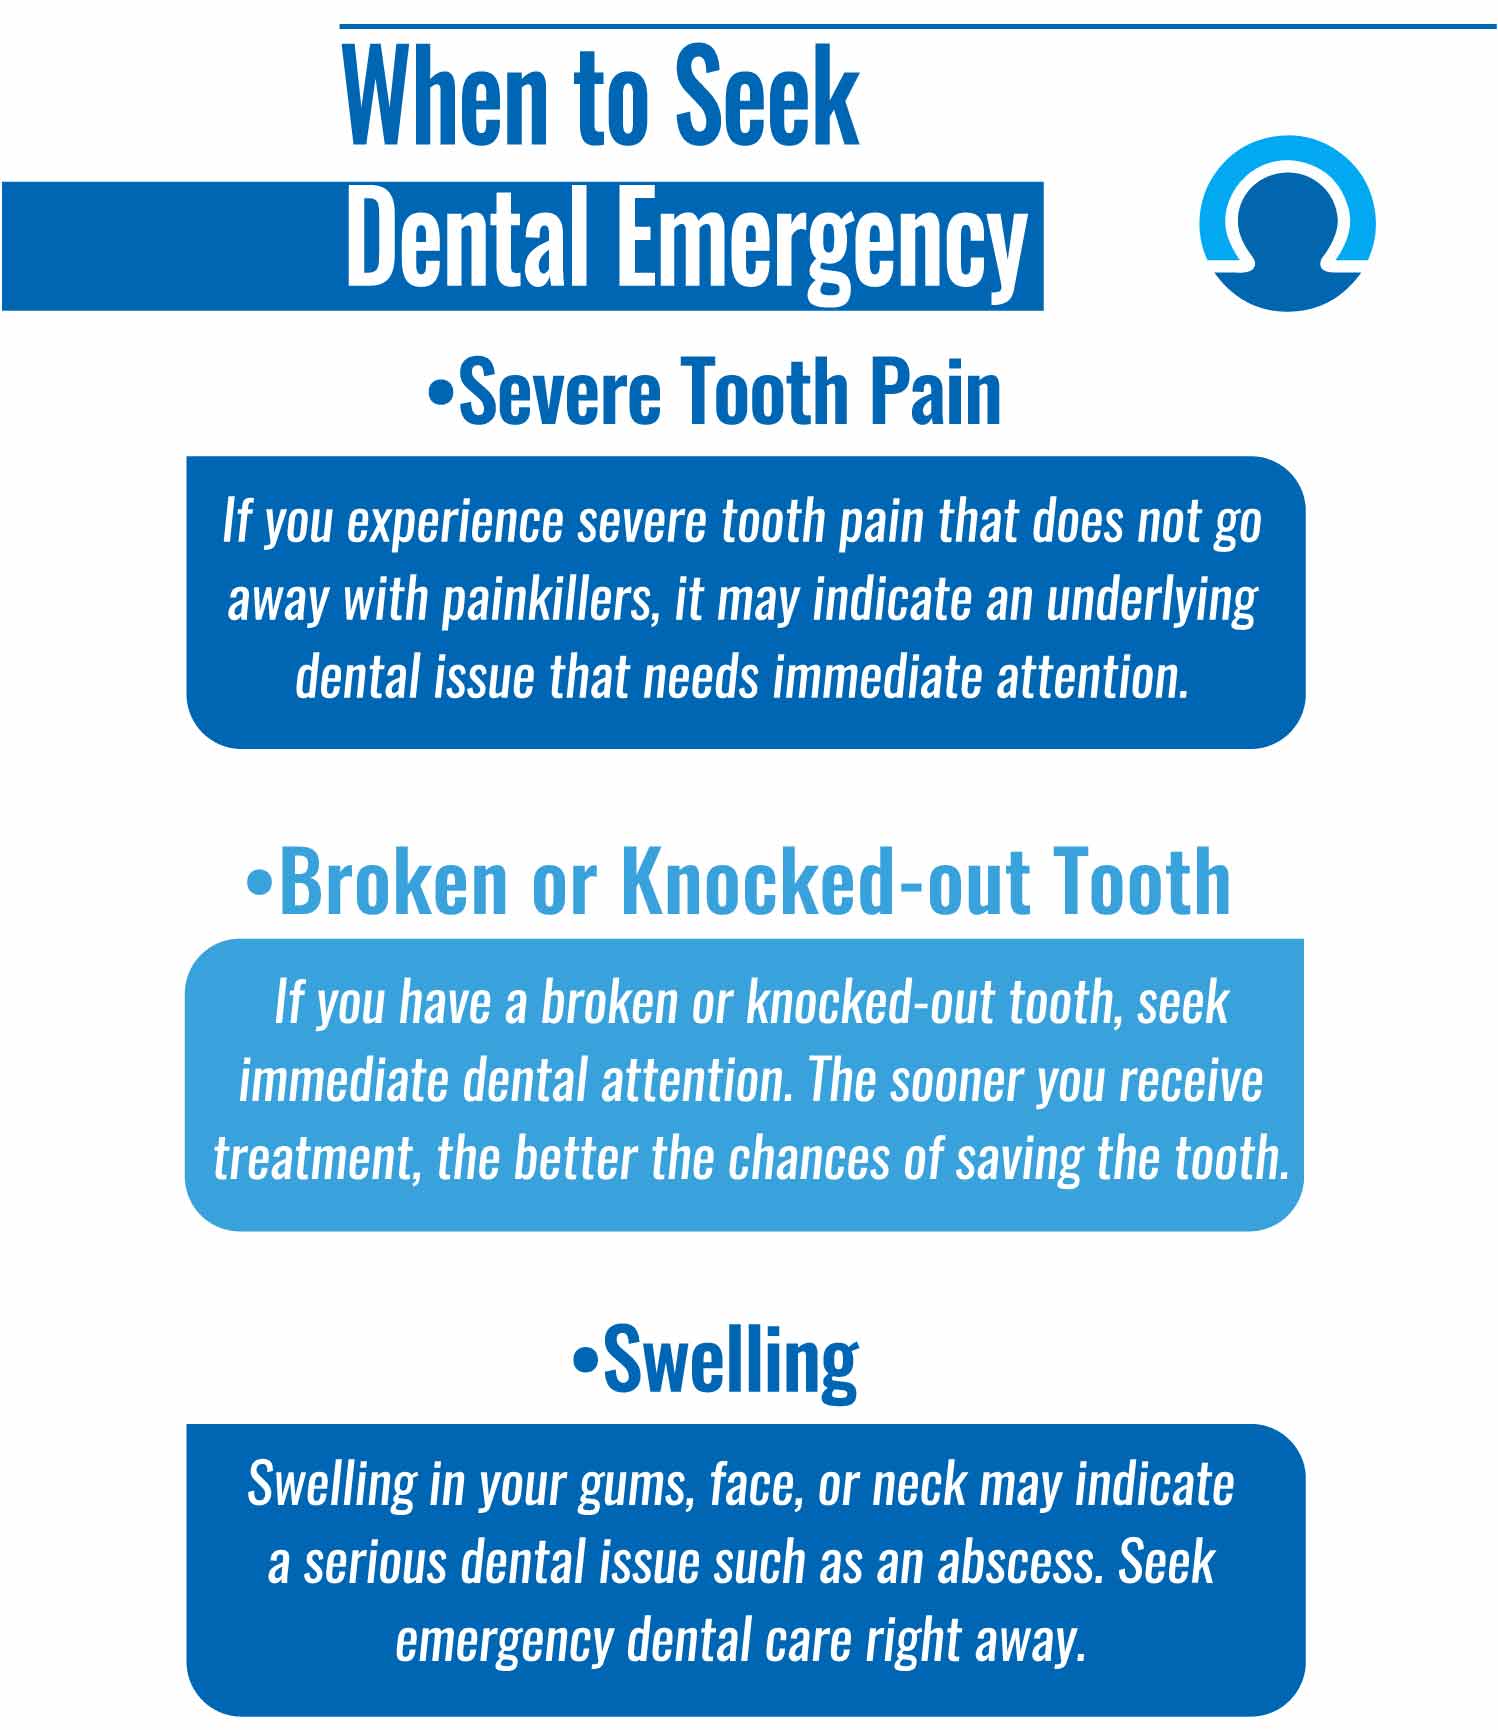 Seek Dental Emergency Appointment in Houston, Texas